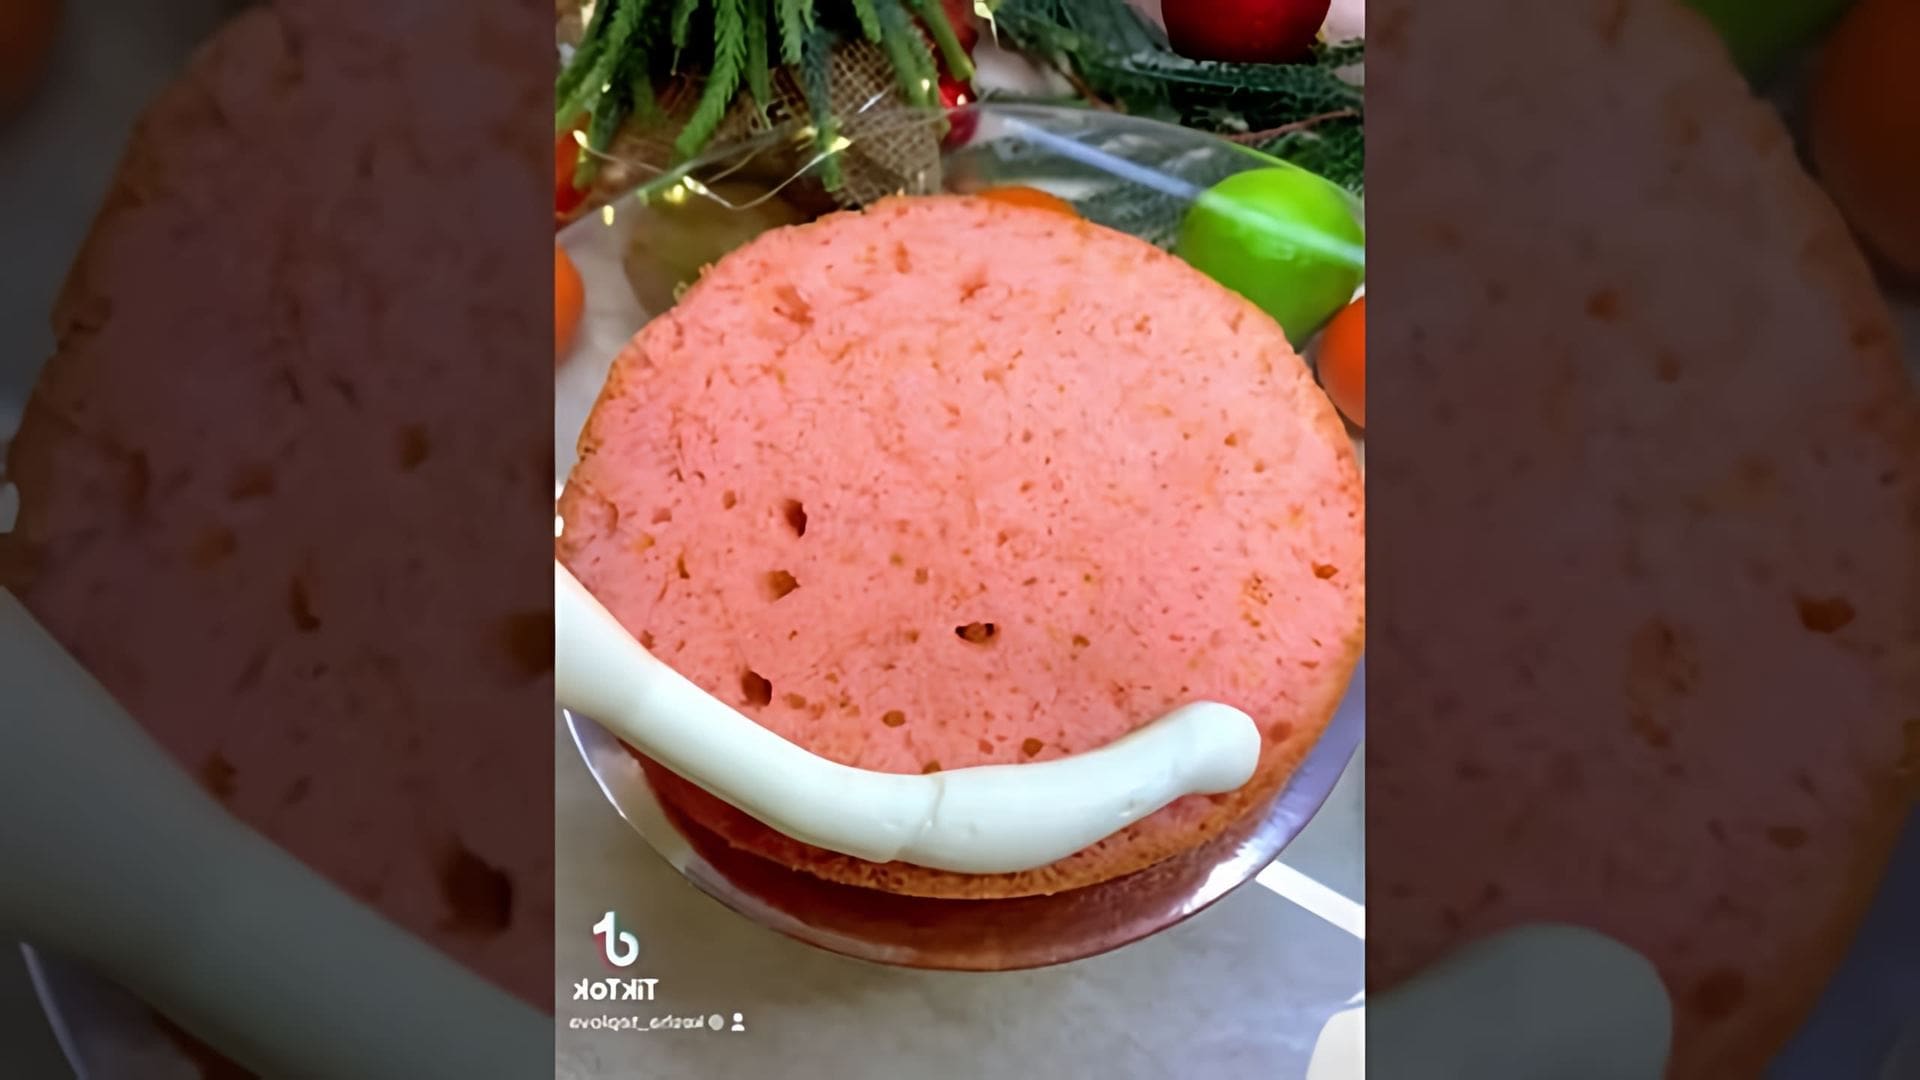 В этом видео девушка рассказывает о том, как она решила приготовить торт для своей мамы на день рождения